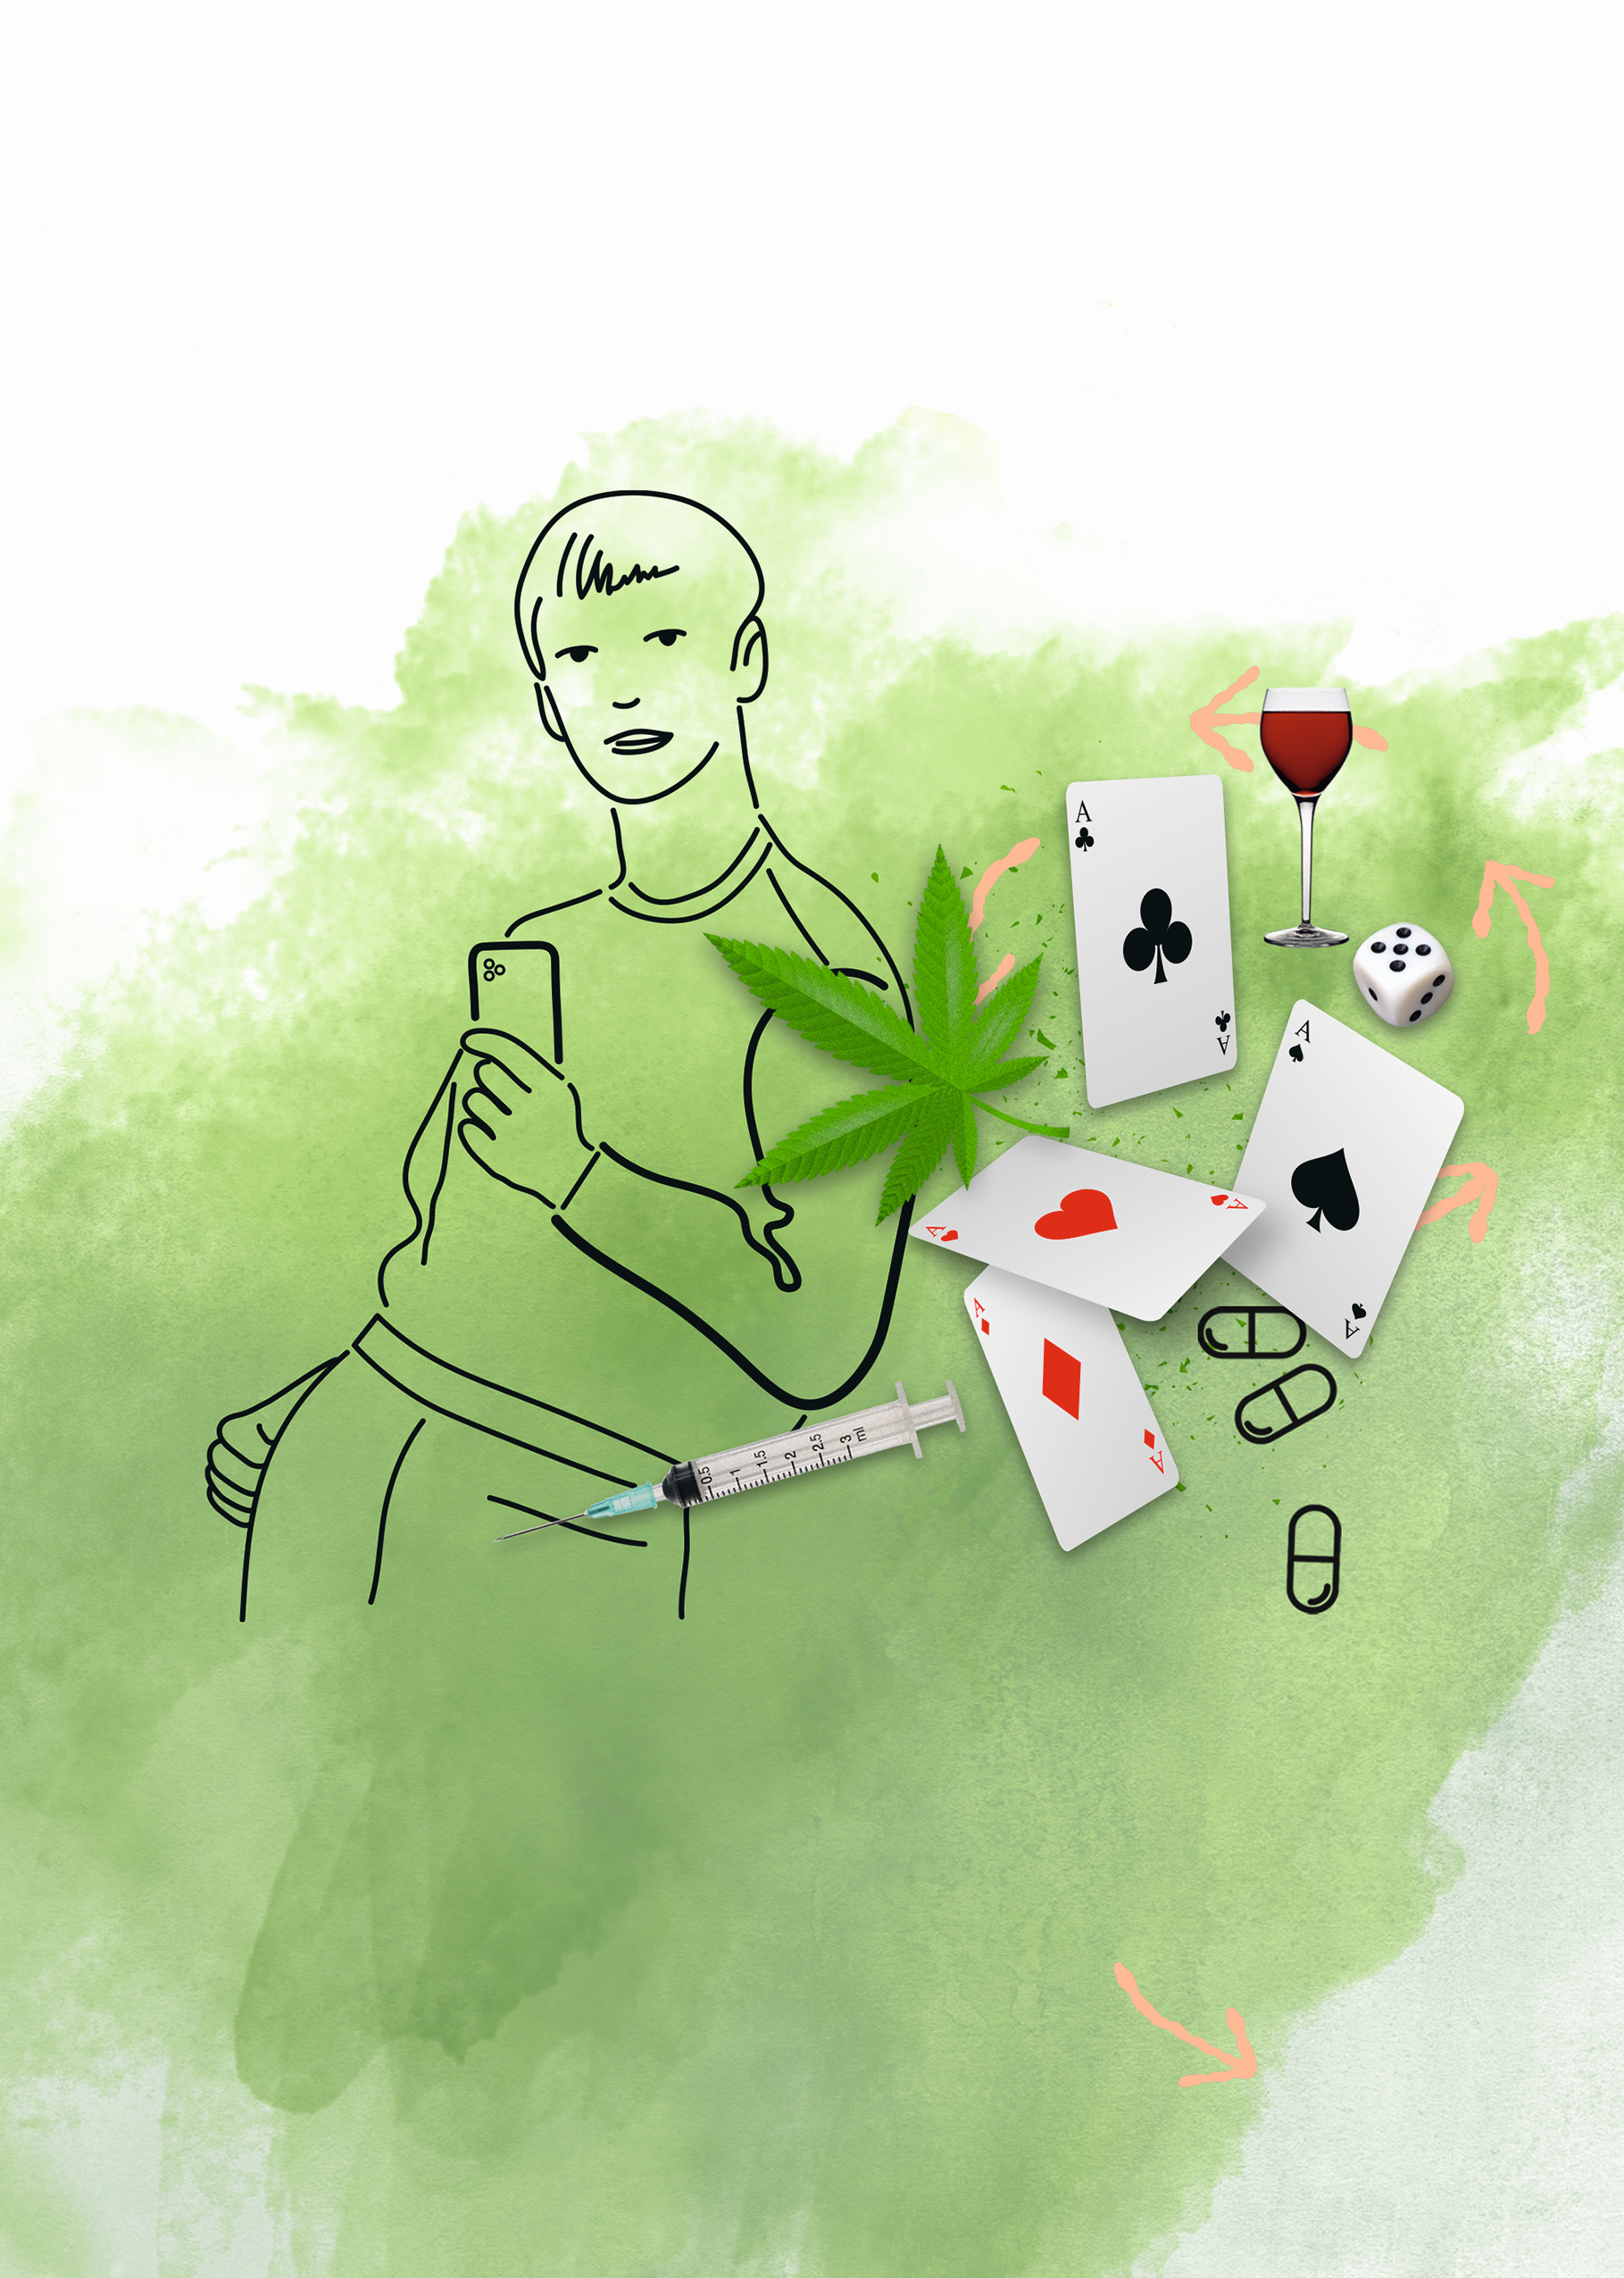 Grafik zeigt einen jungen Mann mit einer Spielkarte in der Hand, daneben unterschiedliche Gegenstände, die für Süchte stehen: Eine Spritze, ein Glas Wein, Spielwürfel, Spielkarten, ein Hanfblatt, Tabletten